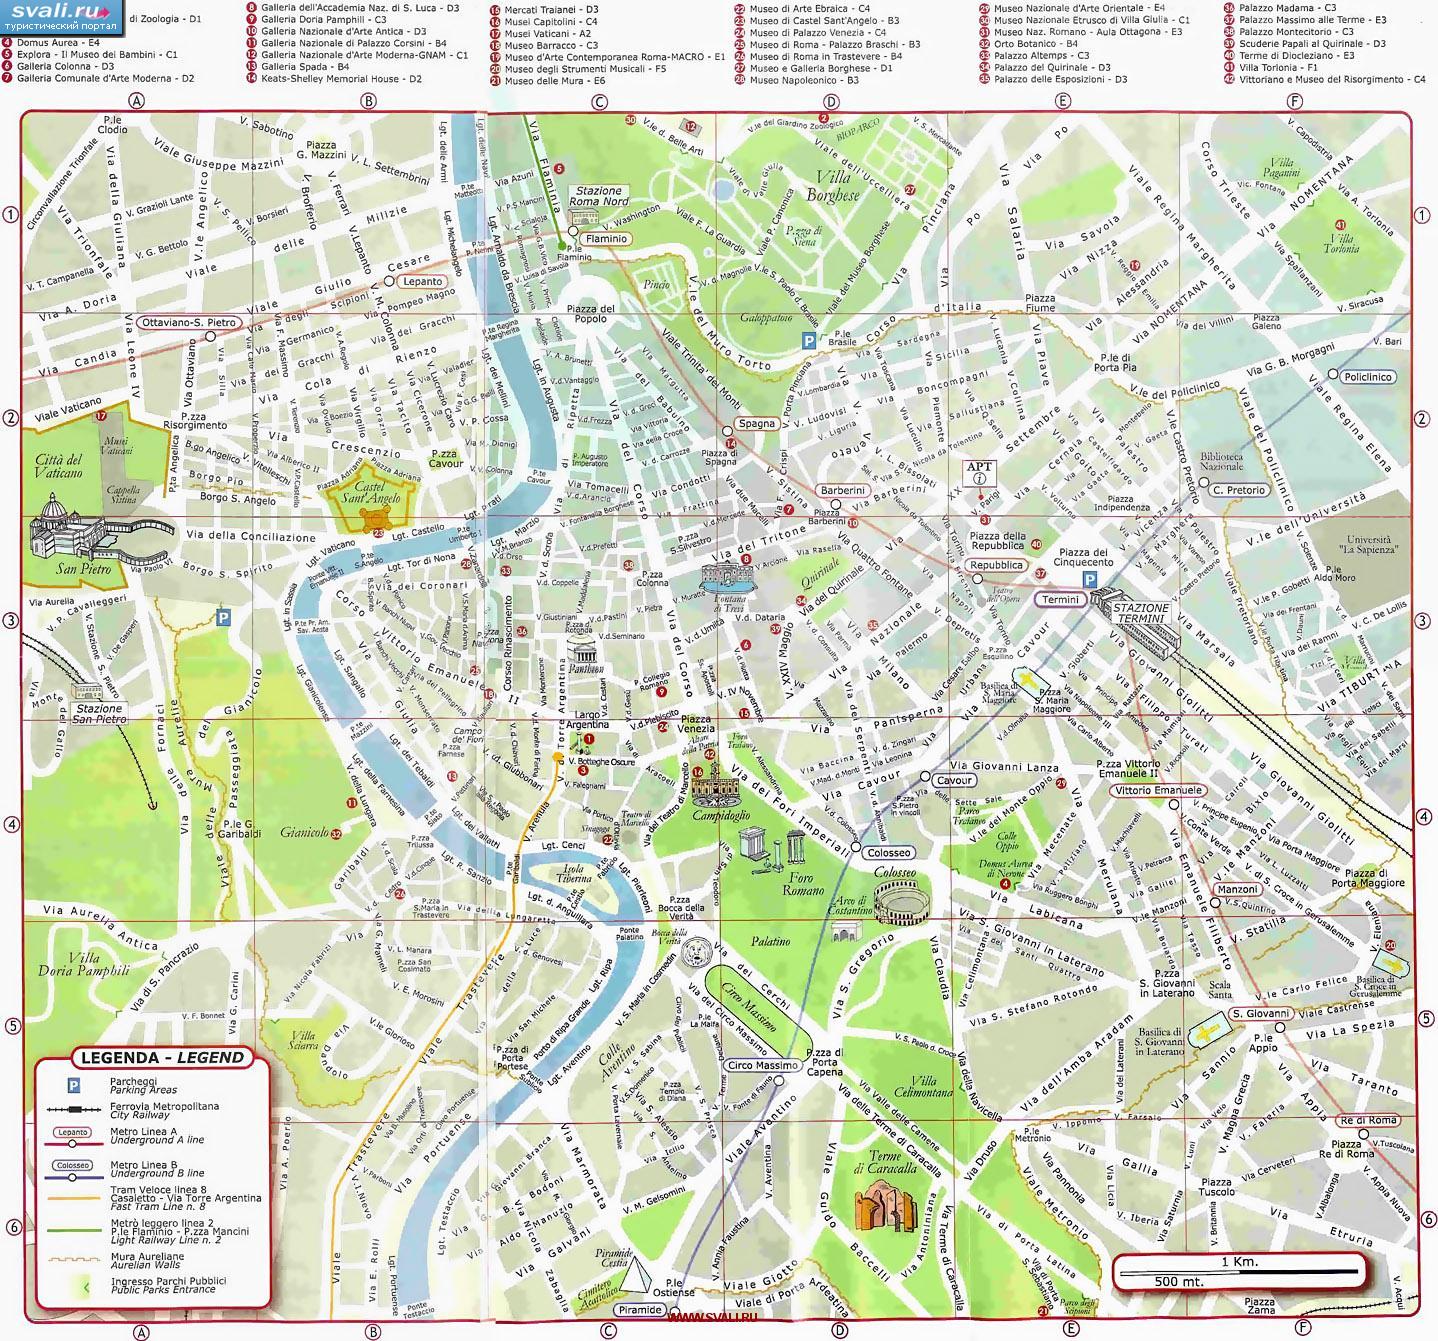 Карта центра Рима с достопримечательностями, Италия (итал.)